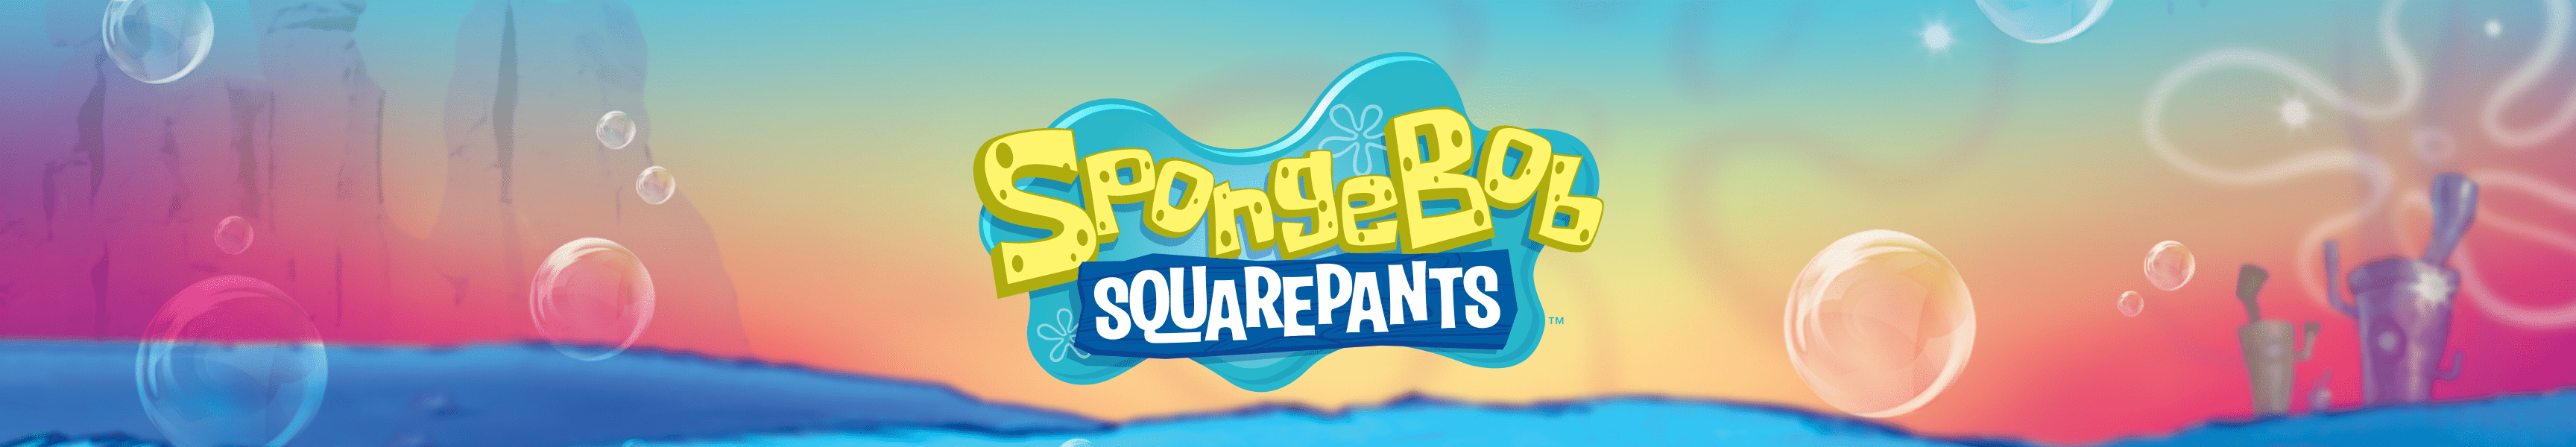 SpongeBob SquarePants Pride